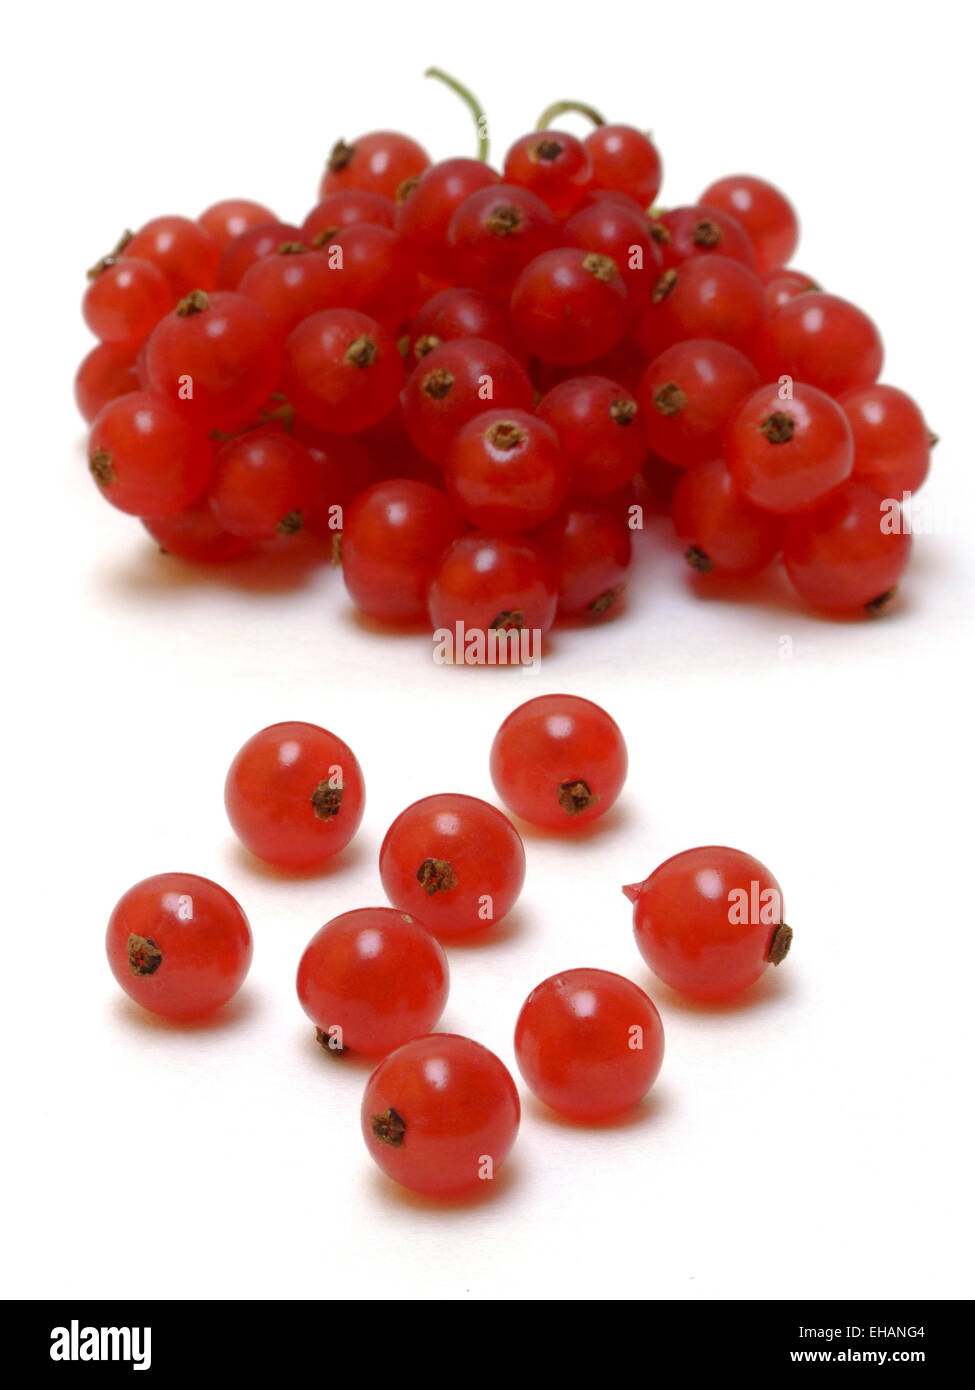 Johannisbeeren / currants (Ribes rubrum) Stock Photo